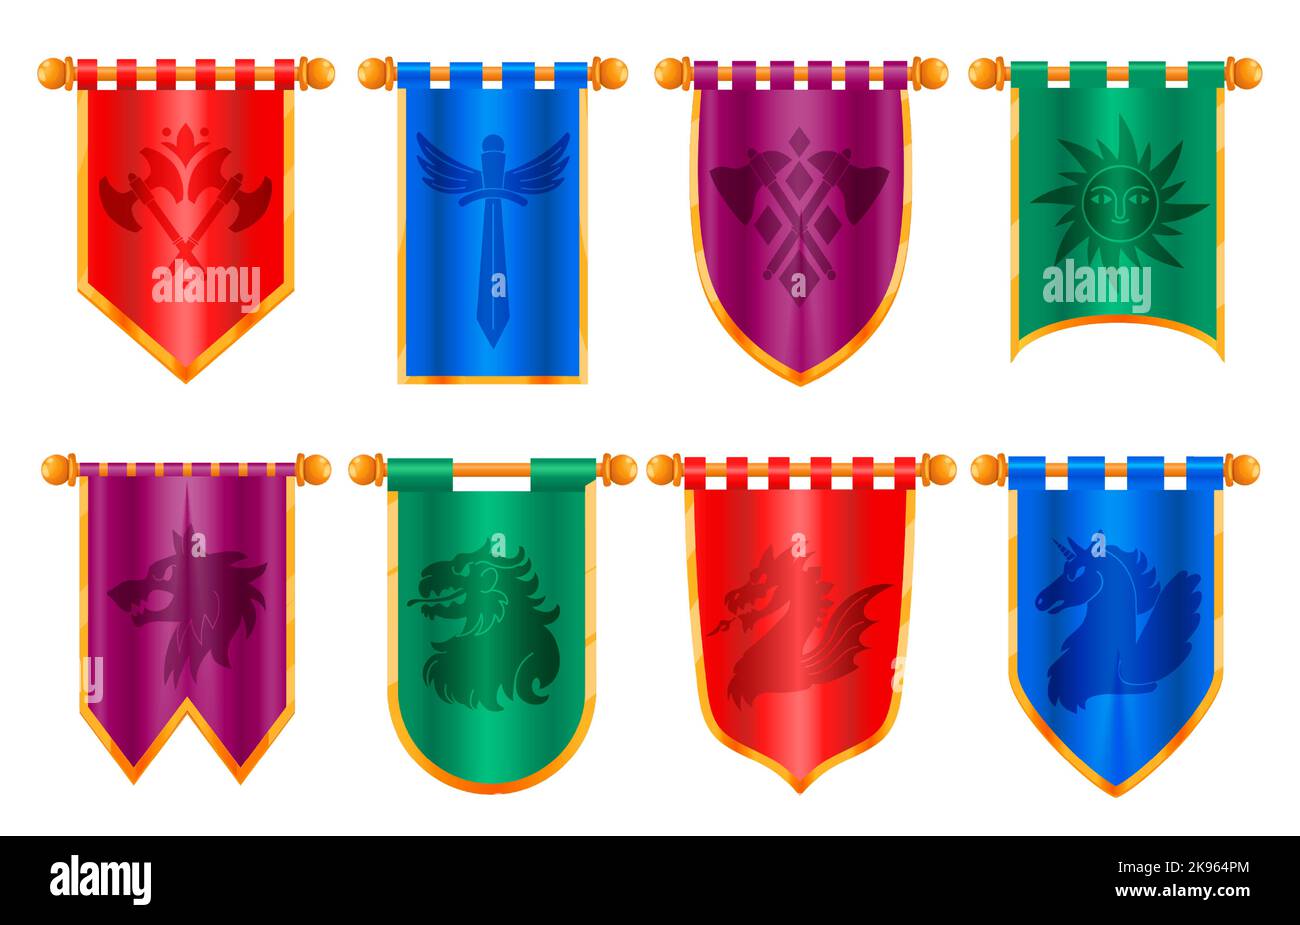 Mittelalterliches königliches Banner. Klassische viktorianische Flaggen mit altem Ritter Wimpel Wappentier Emblem, Cartoon Regal flagstaff für UI-Spiel App-Design. Vektor Stock Vektor